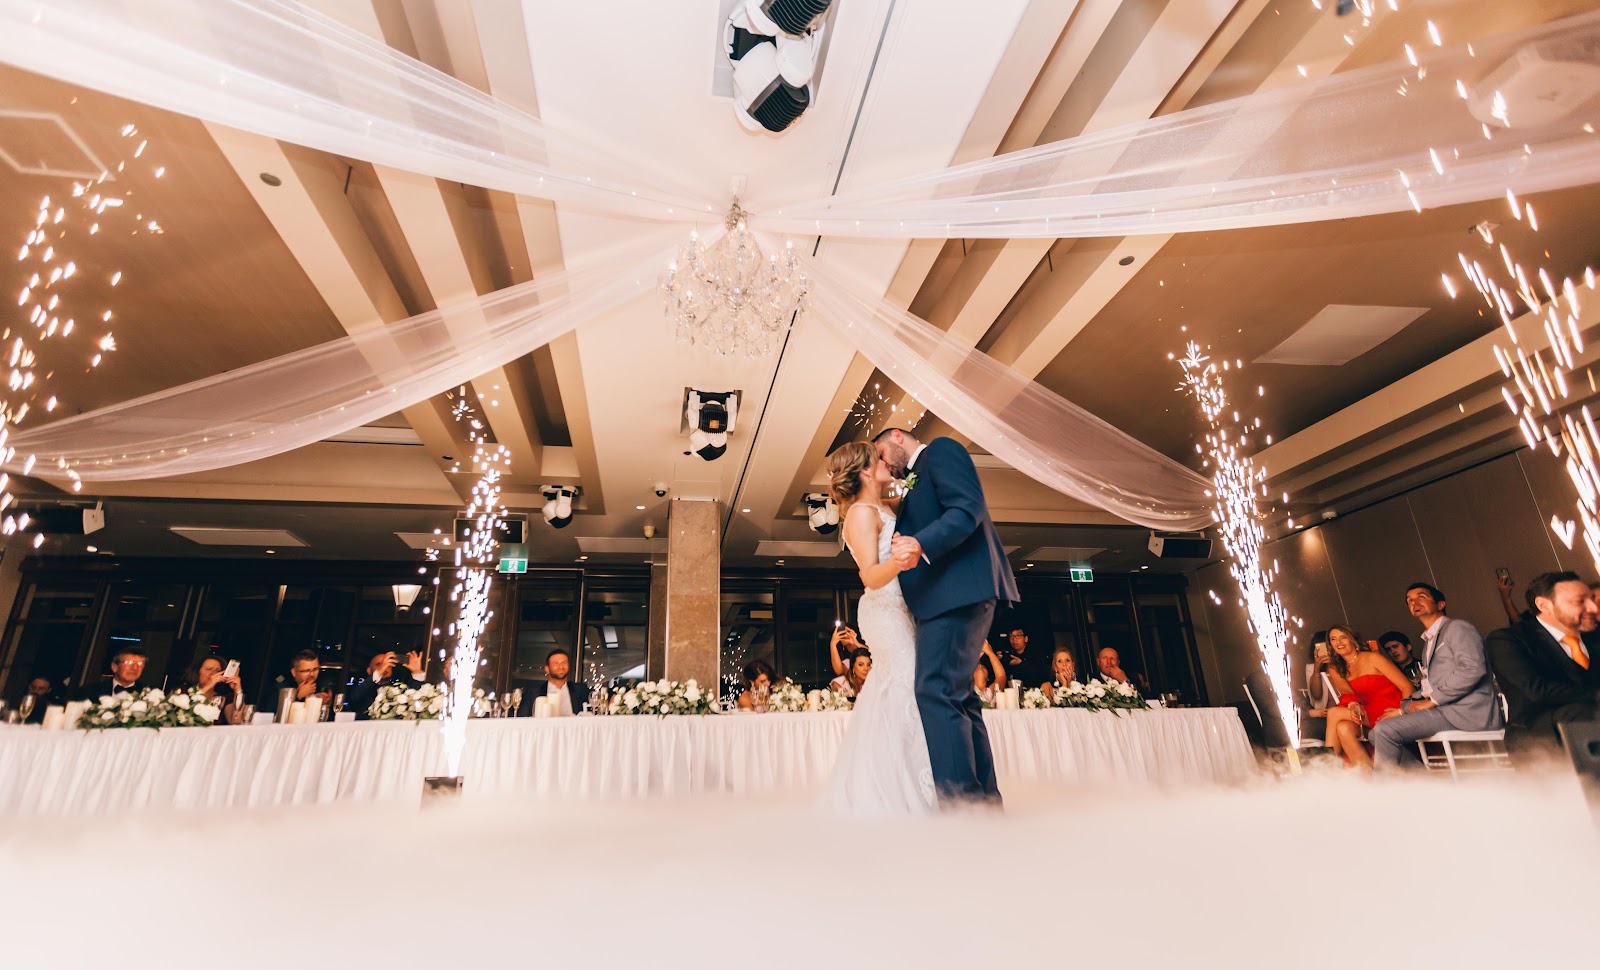 Este será el primer baile como esposos, es un momento único y emocionante. Que mejor que un profesional de la fotografía lo plasme de por vida